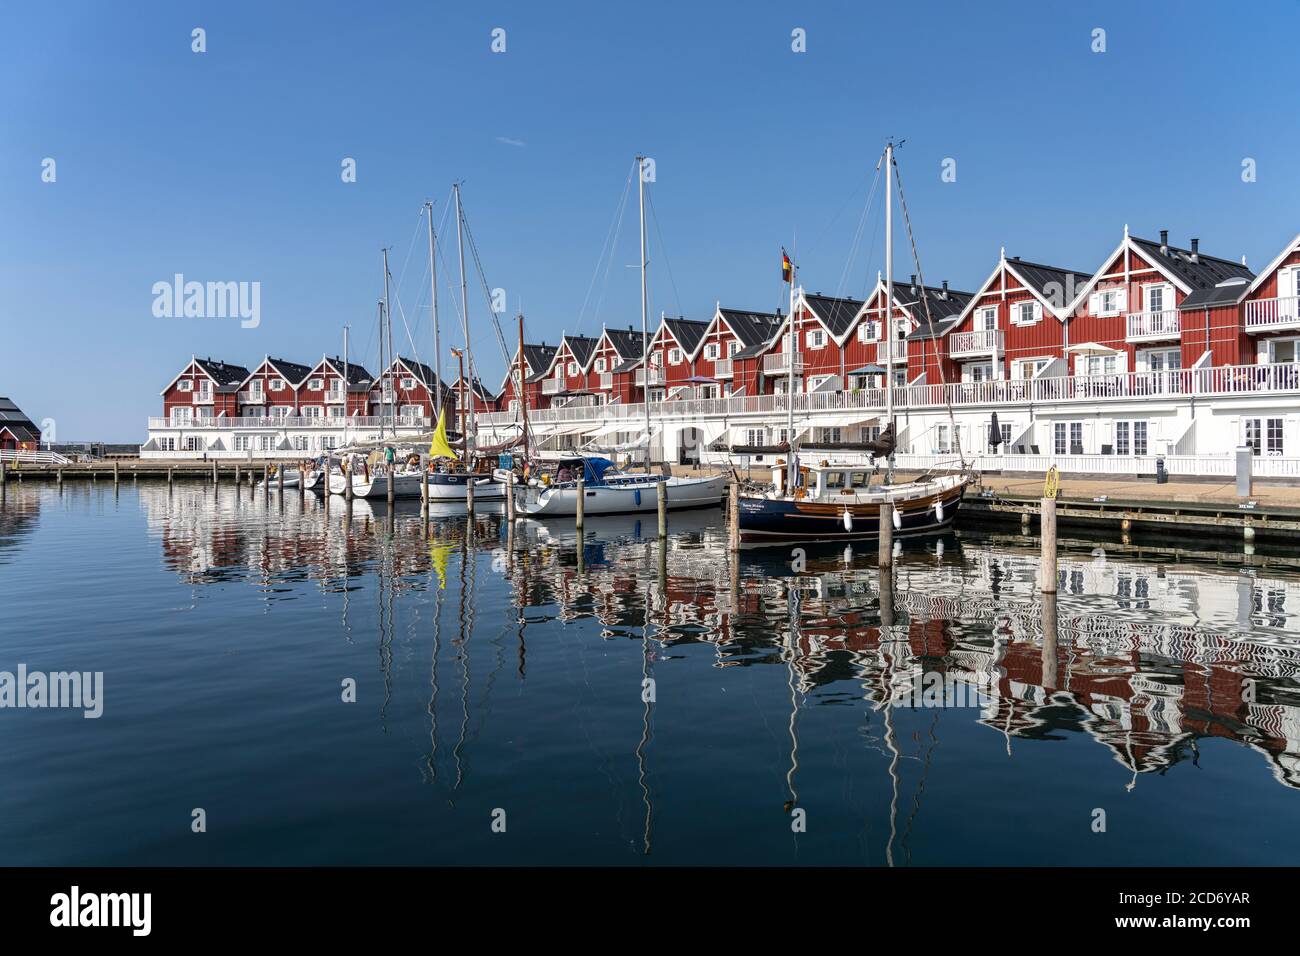 Hafen von Bagenkop, Insel Langeland, Dänemark, Europa | Bagenkop Marina, Langeland island, Denmark, Europe Stock Photo